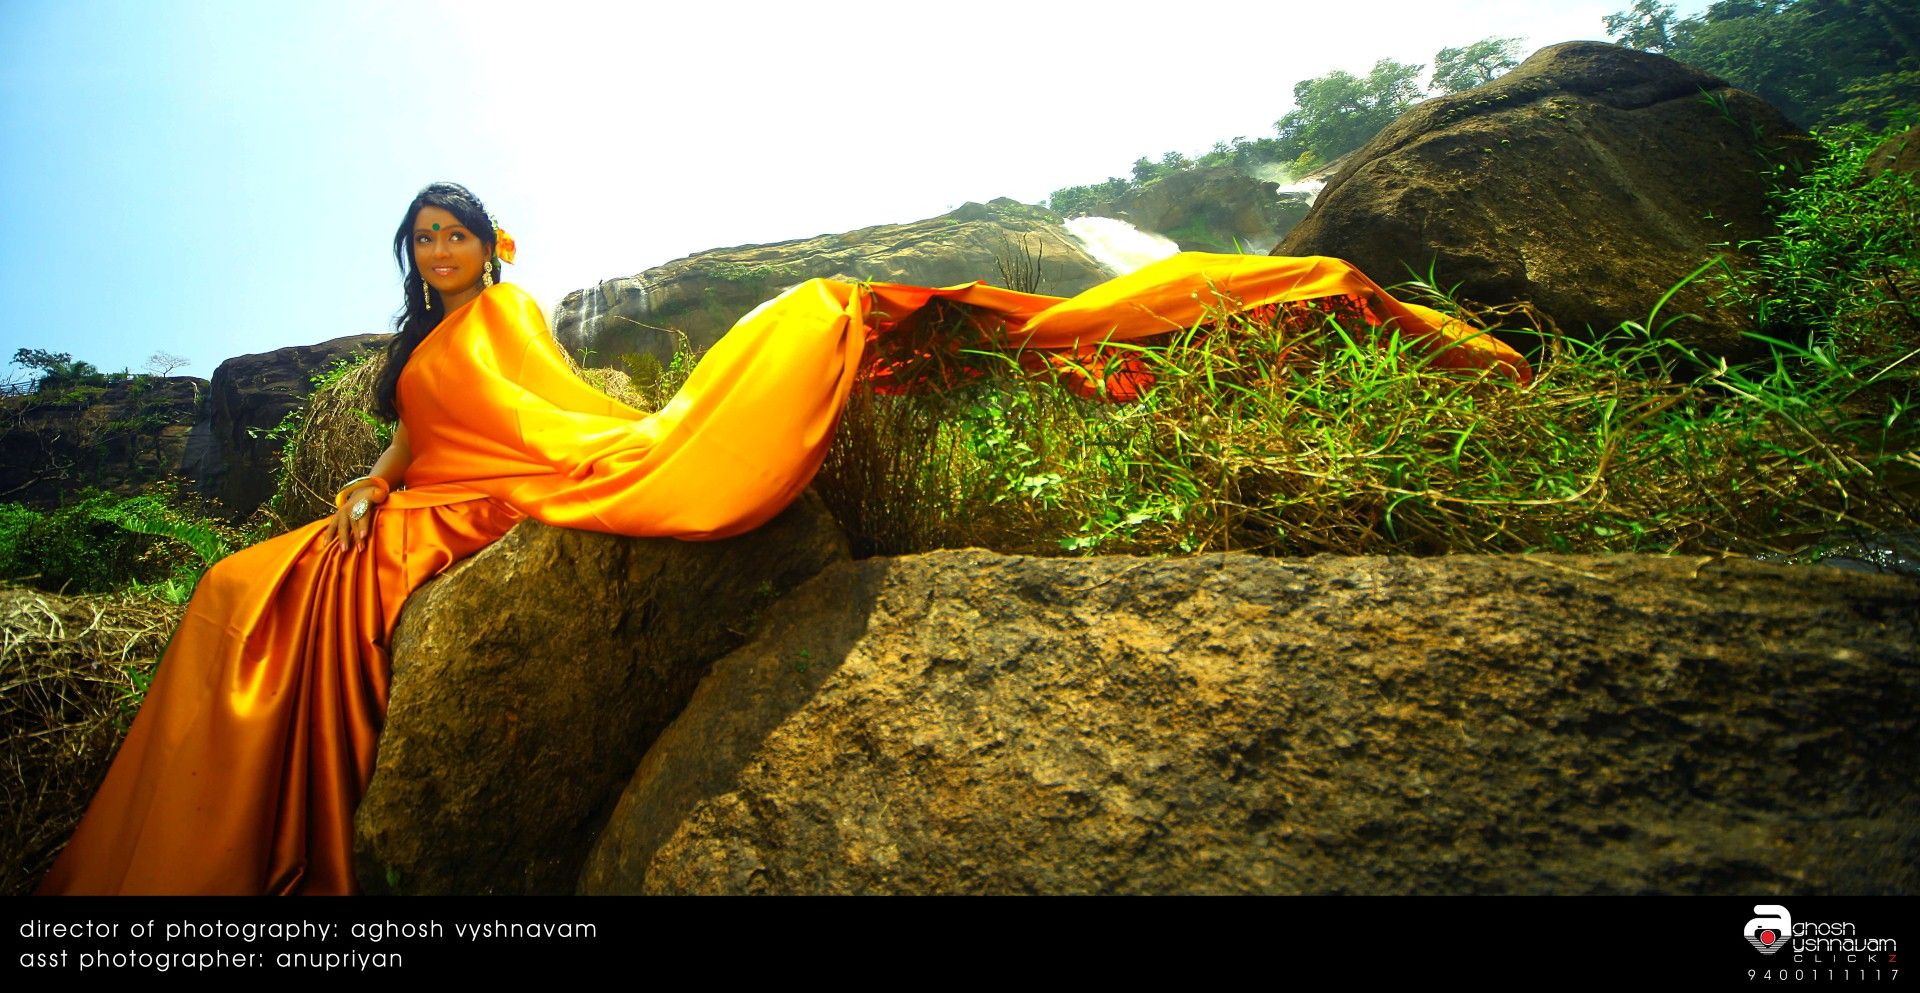 Mannaru Heroine Vaishali Hot Photoshoot Stills | Picture 307916